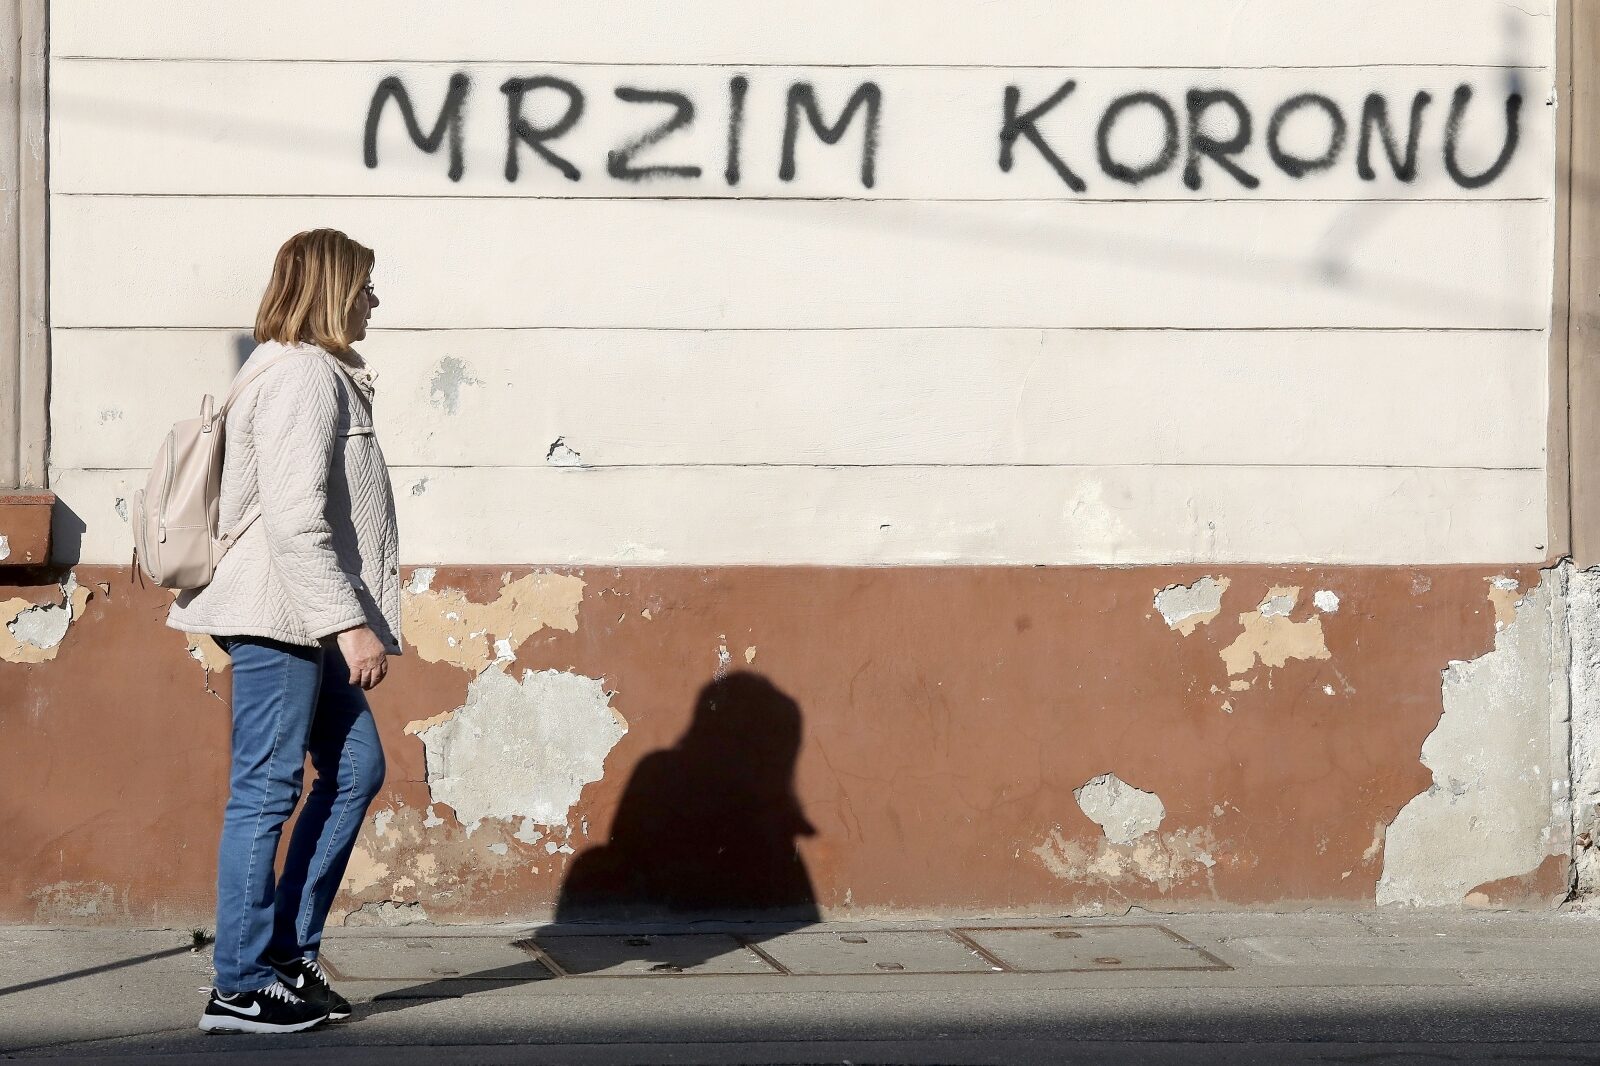 Zagreb: Osvanuo grafit Mrzim koronu